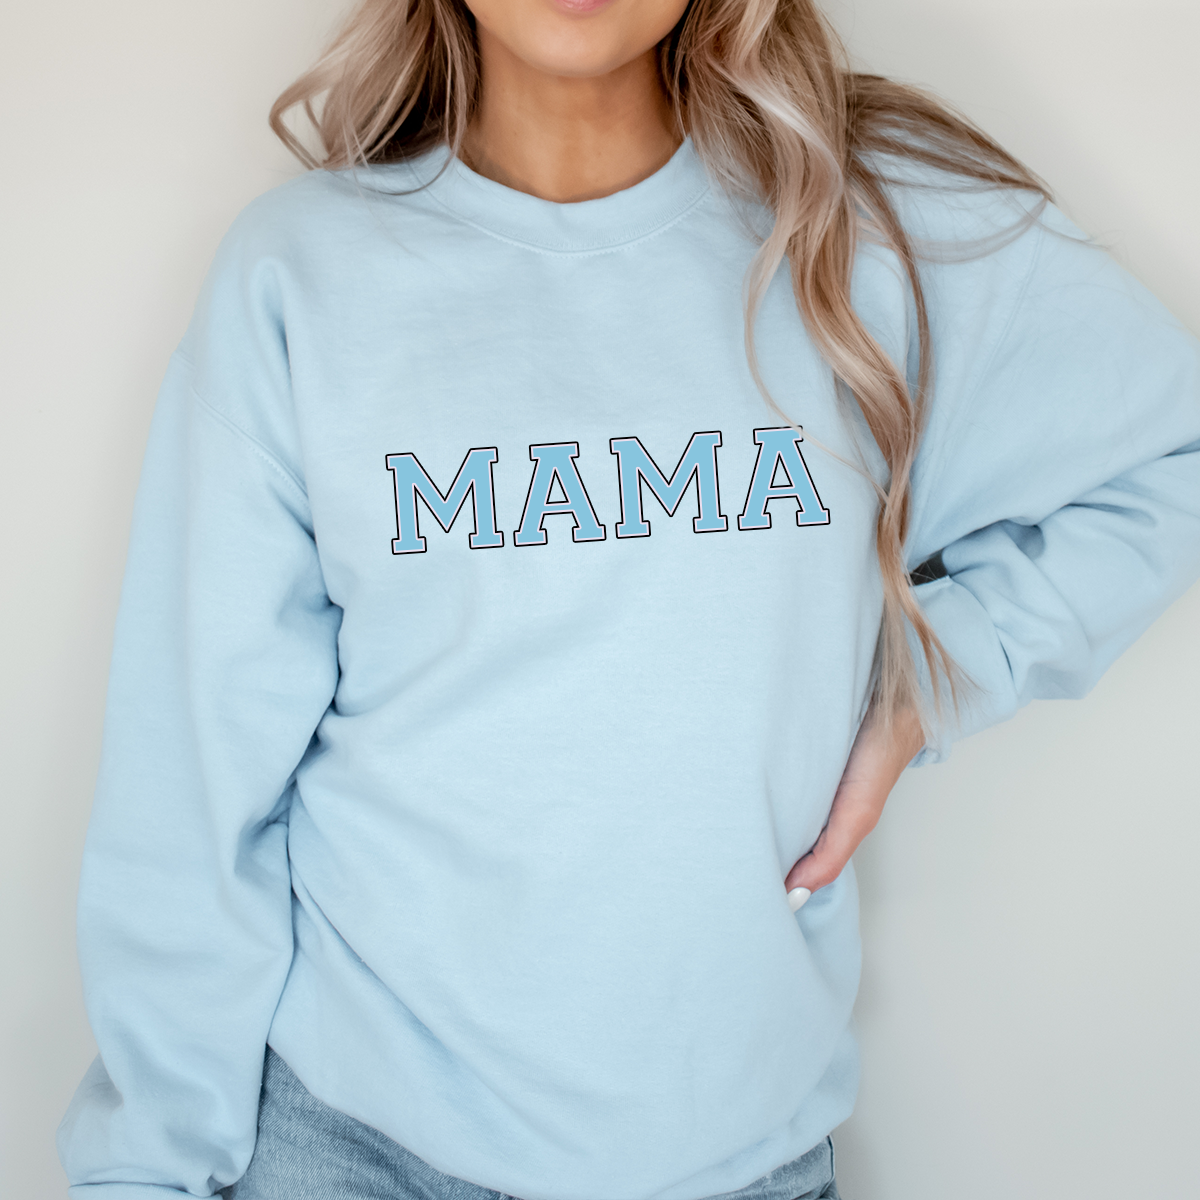 Personalised Varsity Letters Baby Blue Sweatshirt